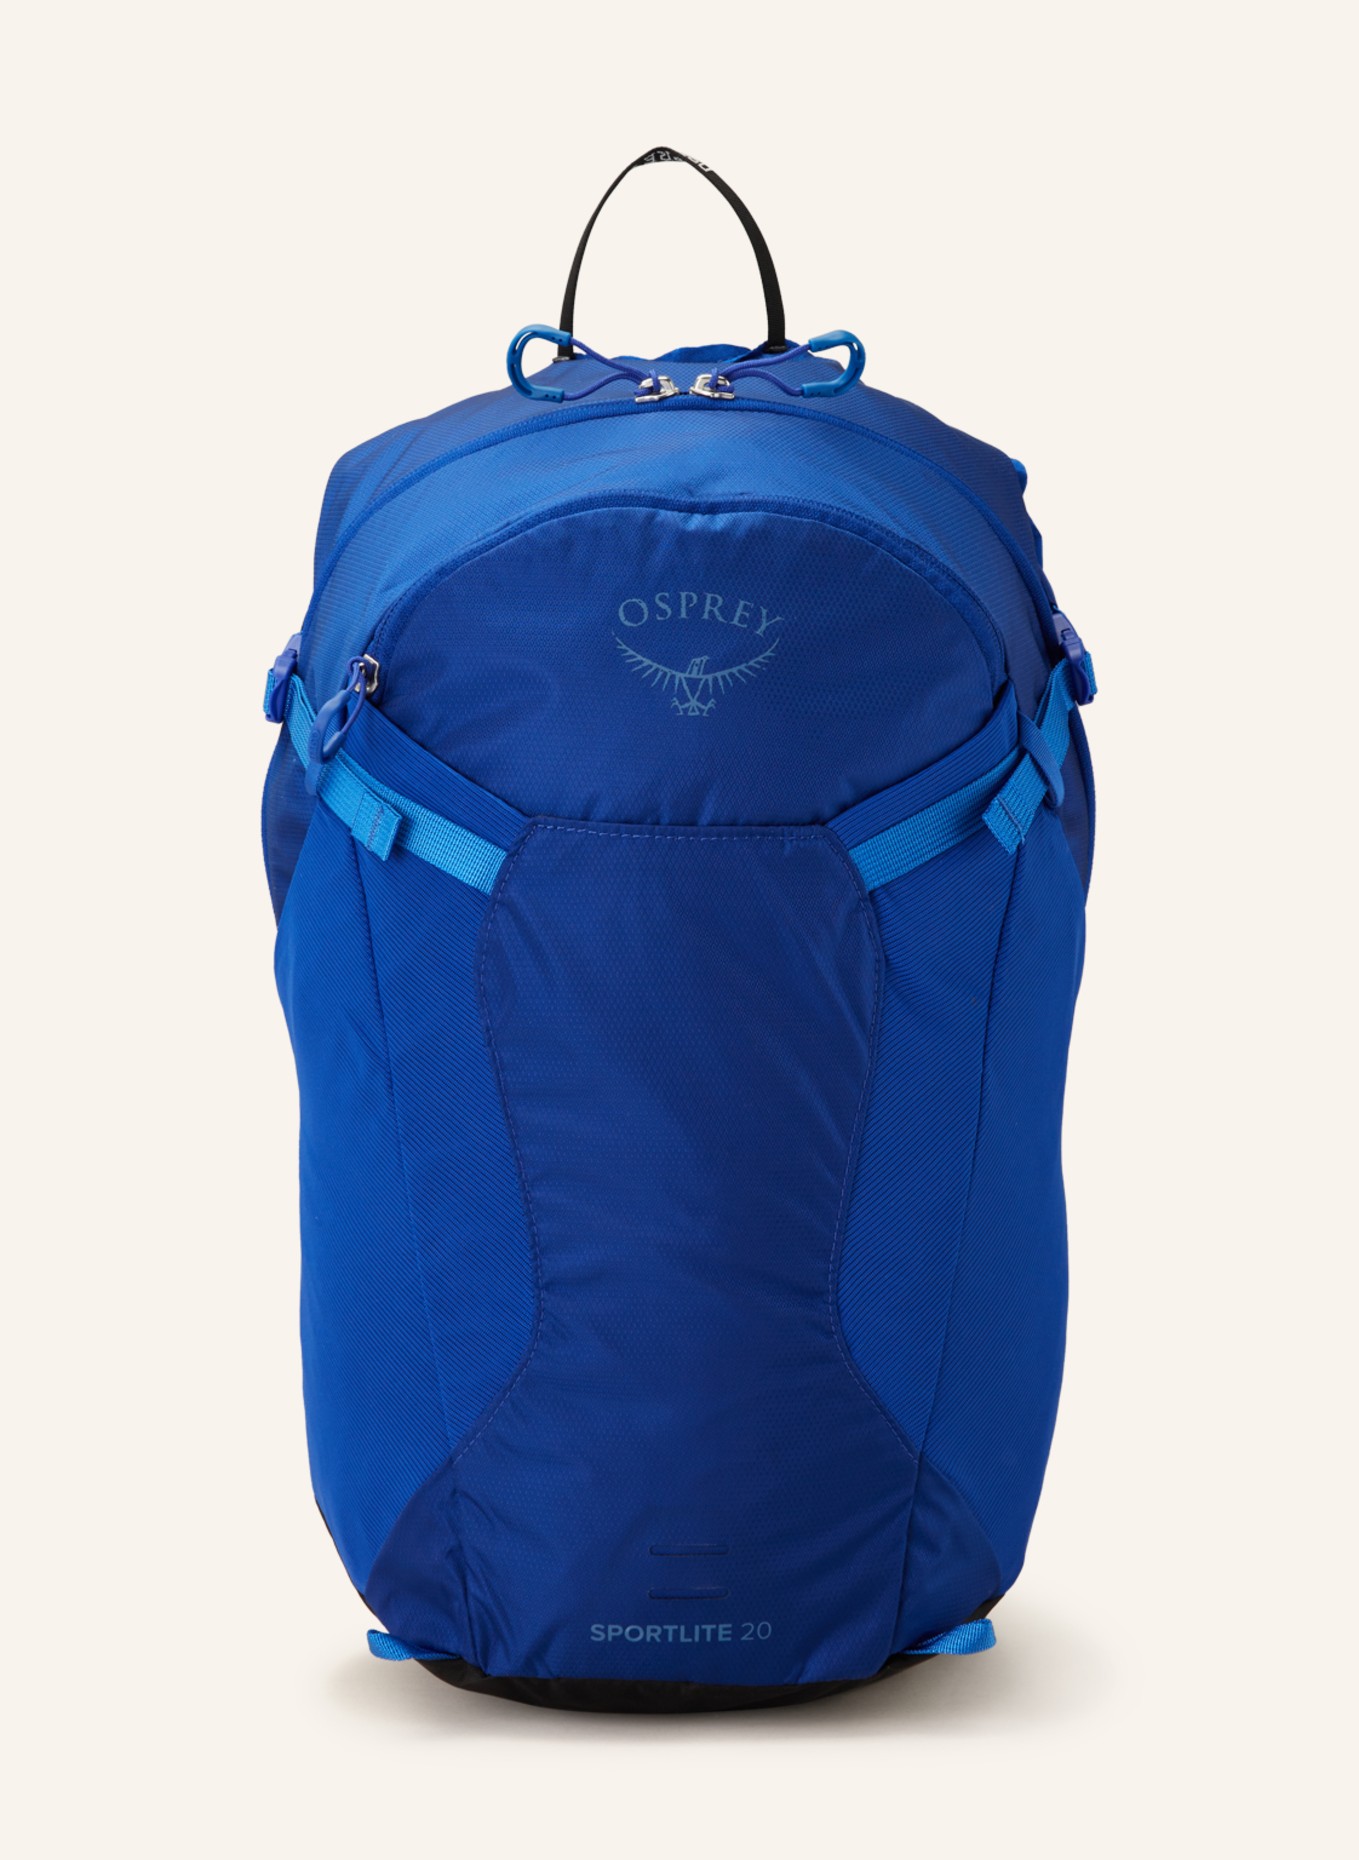 OSPREY Backpack SPORTLITE 20 l, Color: BLUE (Image 1)